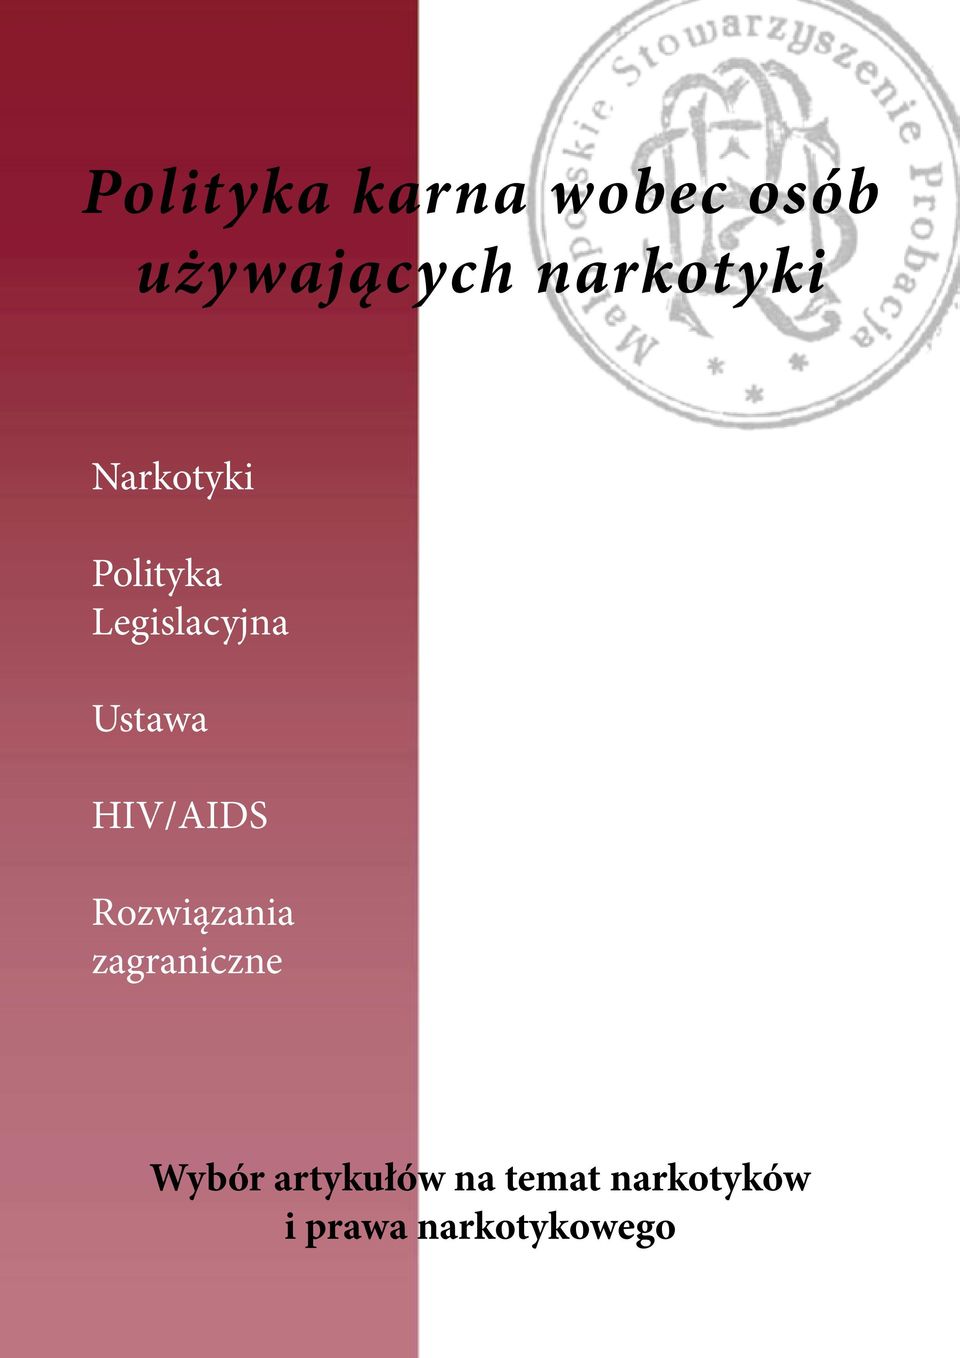 Ustawa HIV/AIDS Rozwiązania zagraniczne